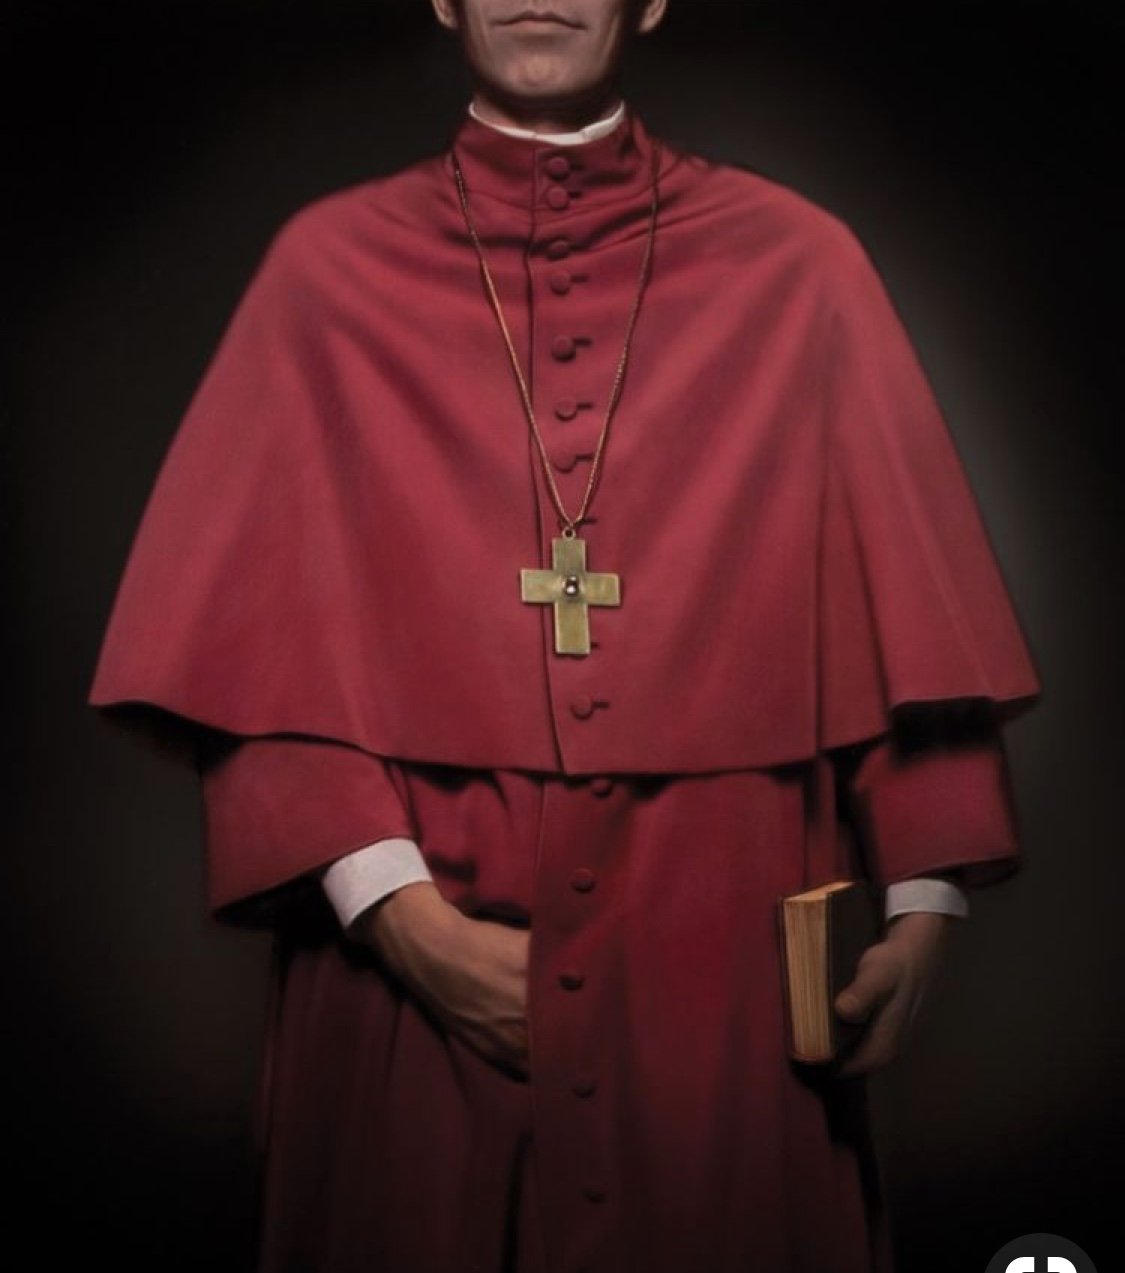 Pri est. Капеллан священник католический. Кардинал священник. Кардиналы Ватикана. Капеллан священник католический арт.